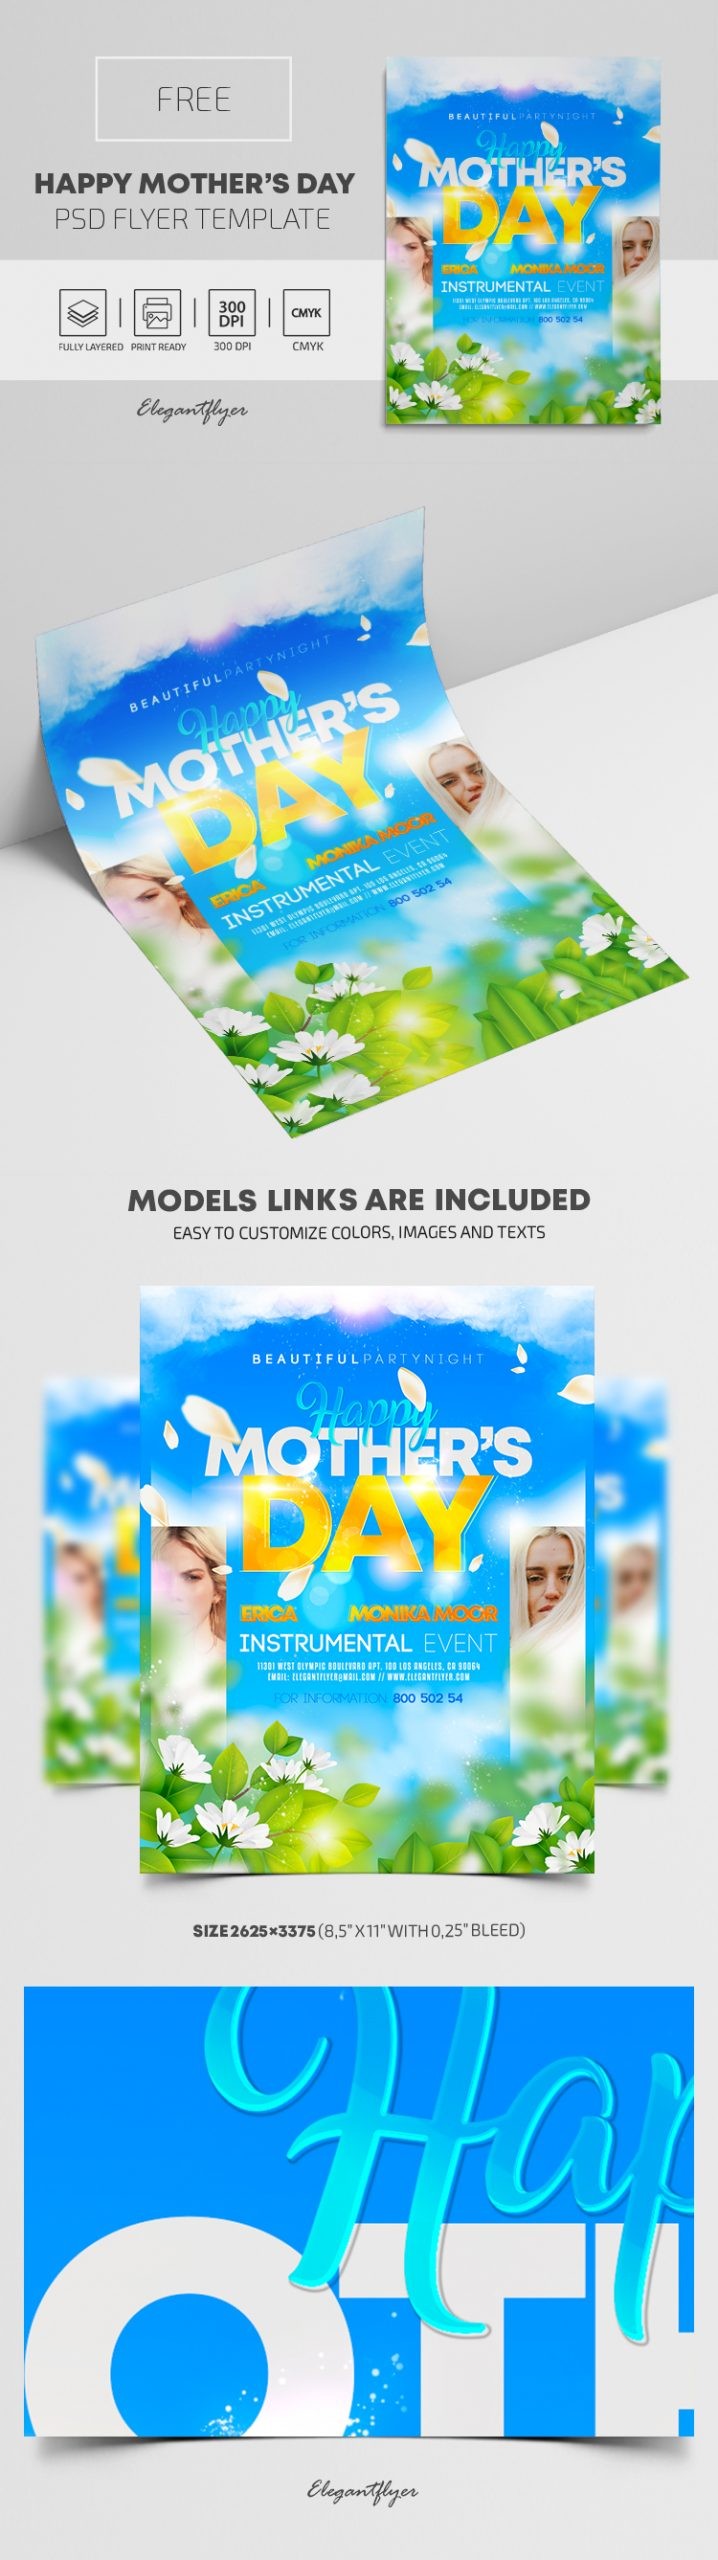 Folheto Feliz Dia das Mães by ElegantFlyer